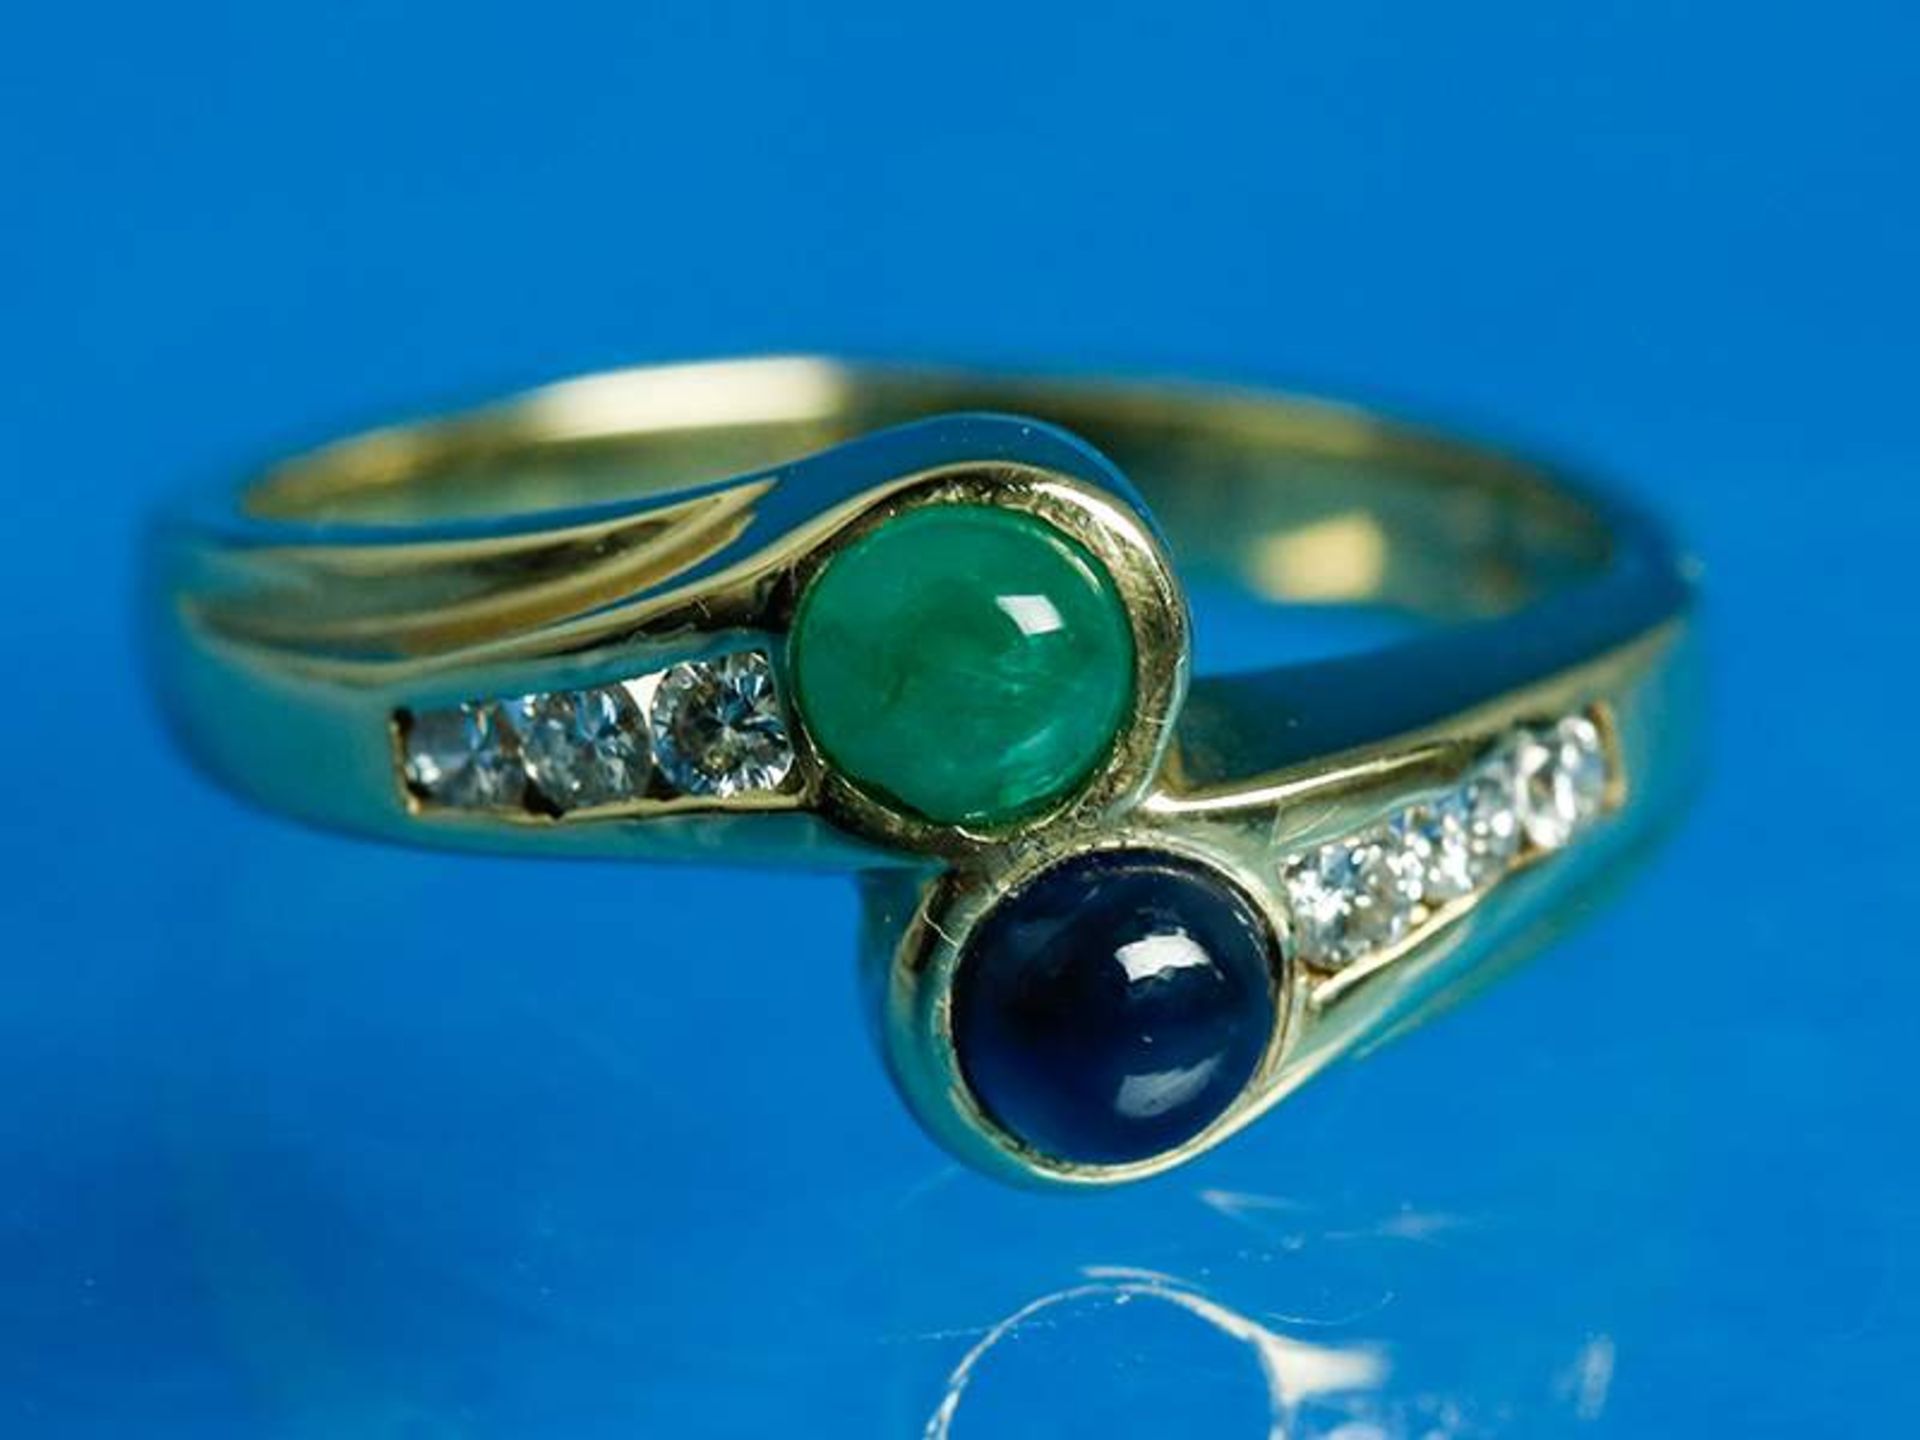 Crossover-Ring mit Smaragd, Saphir und kleinen Brillanten, zusammen ca. 0,18 ct, 20. Jh.
585/-